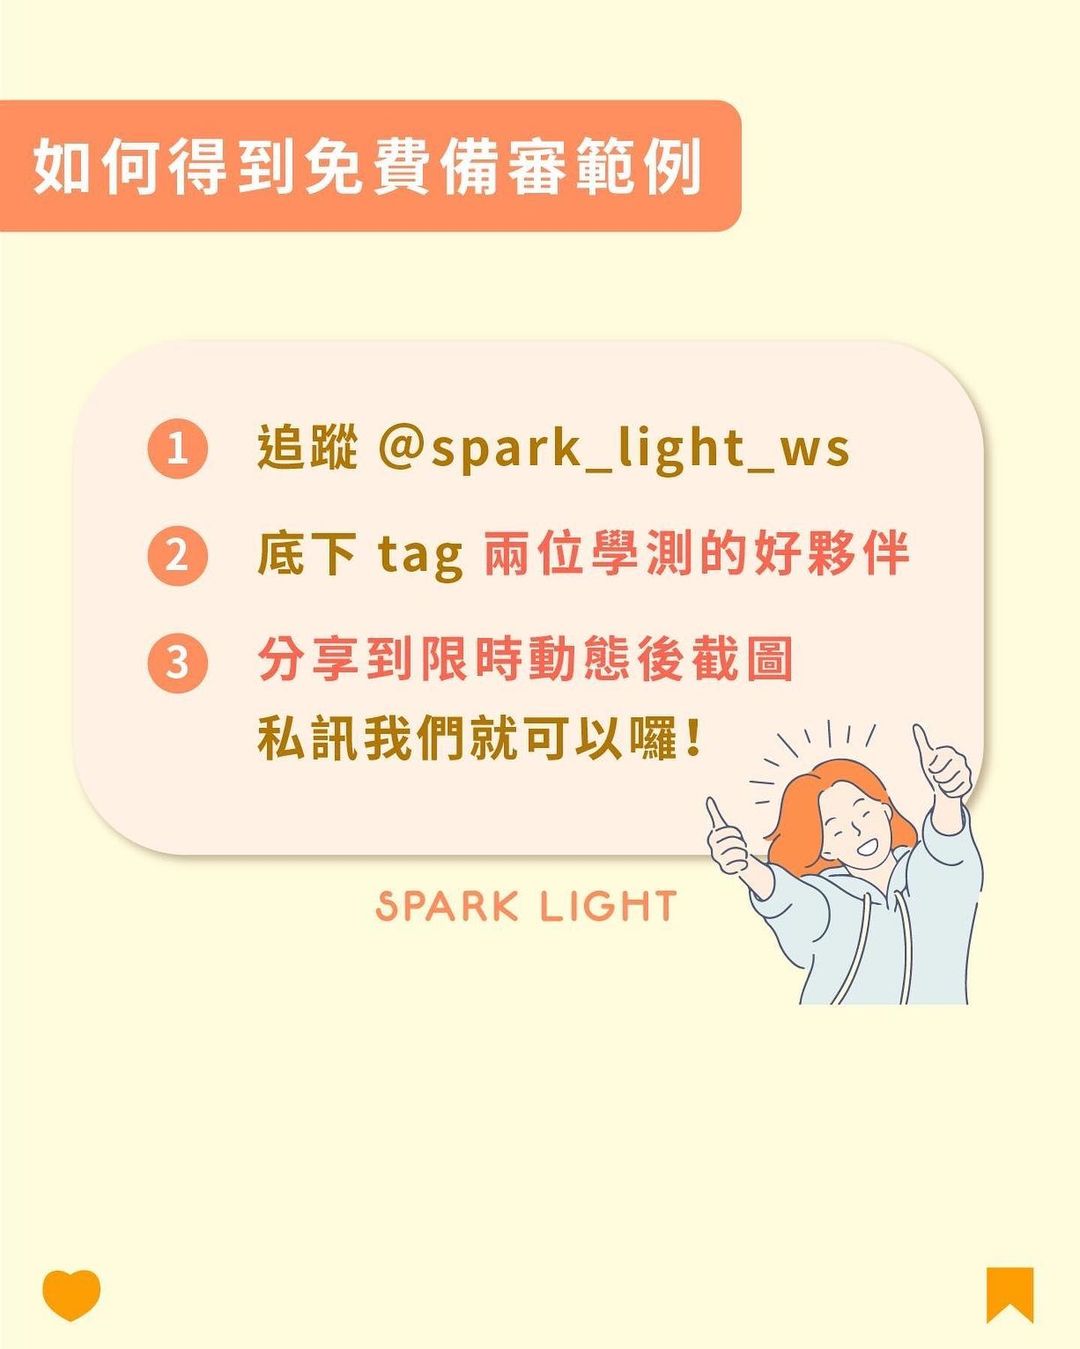 免費學測備審經典範例 ｜spark_light_ws- spark_light_ws